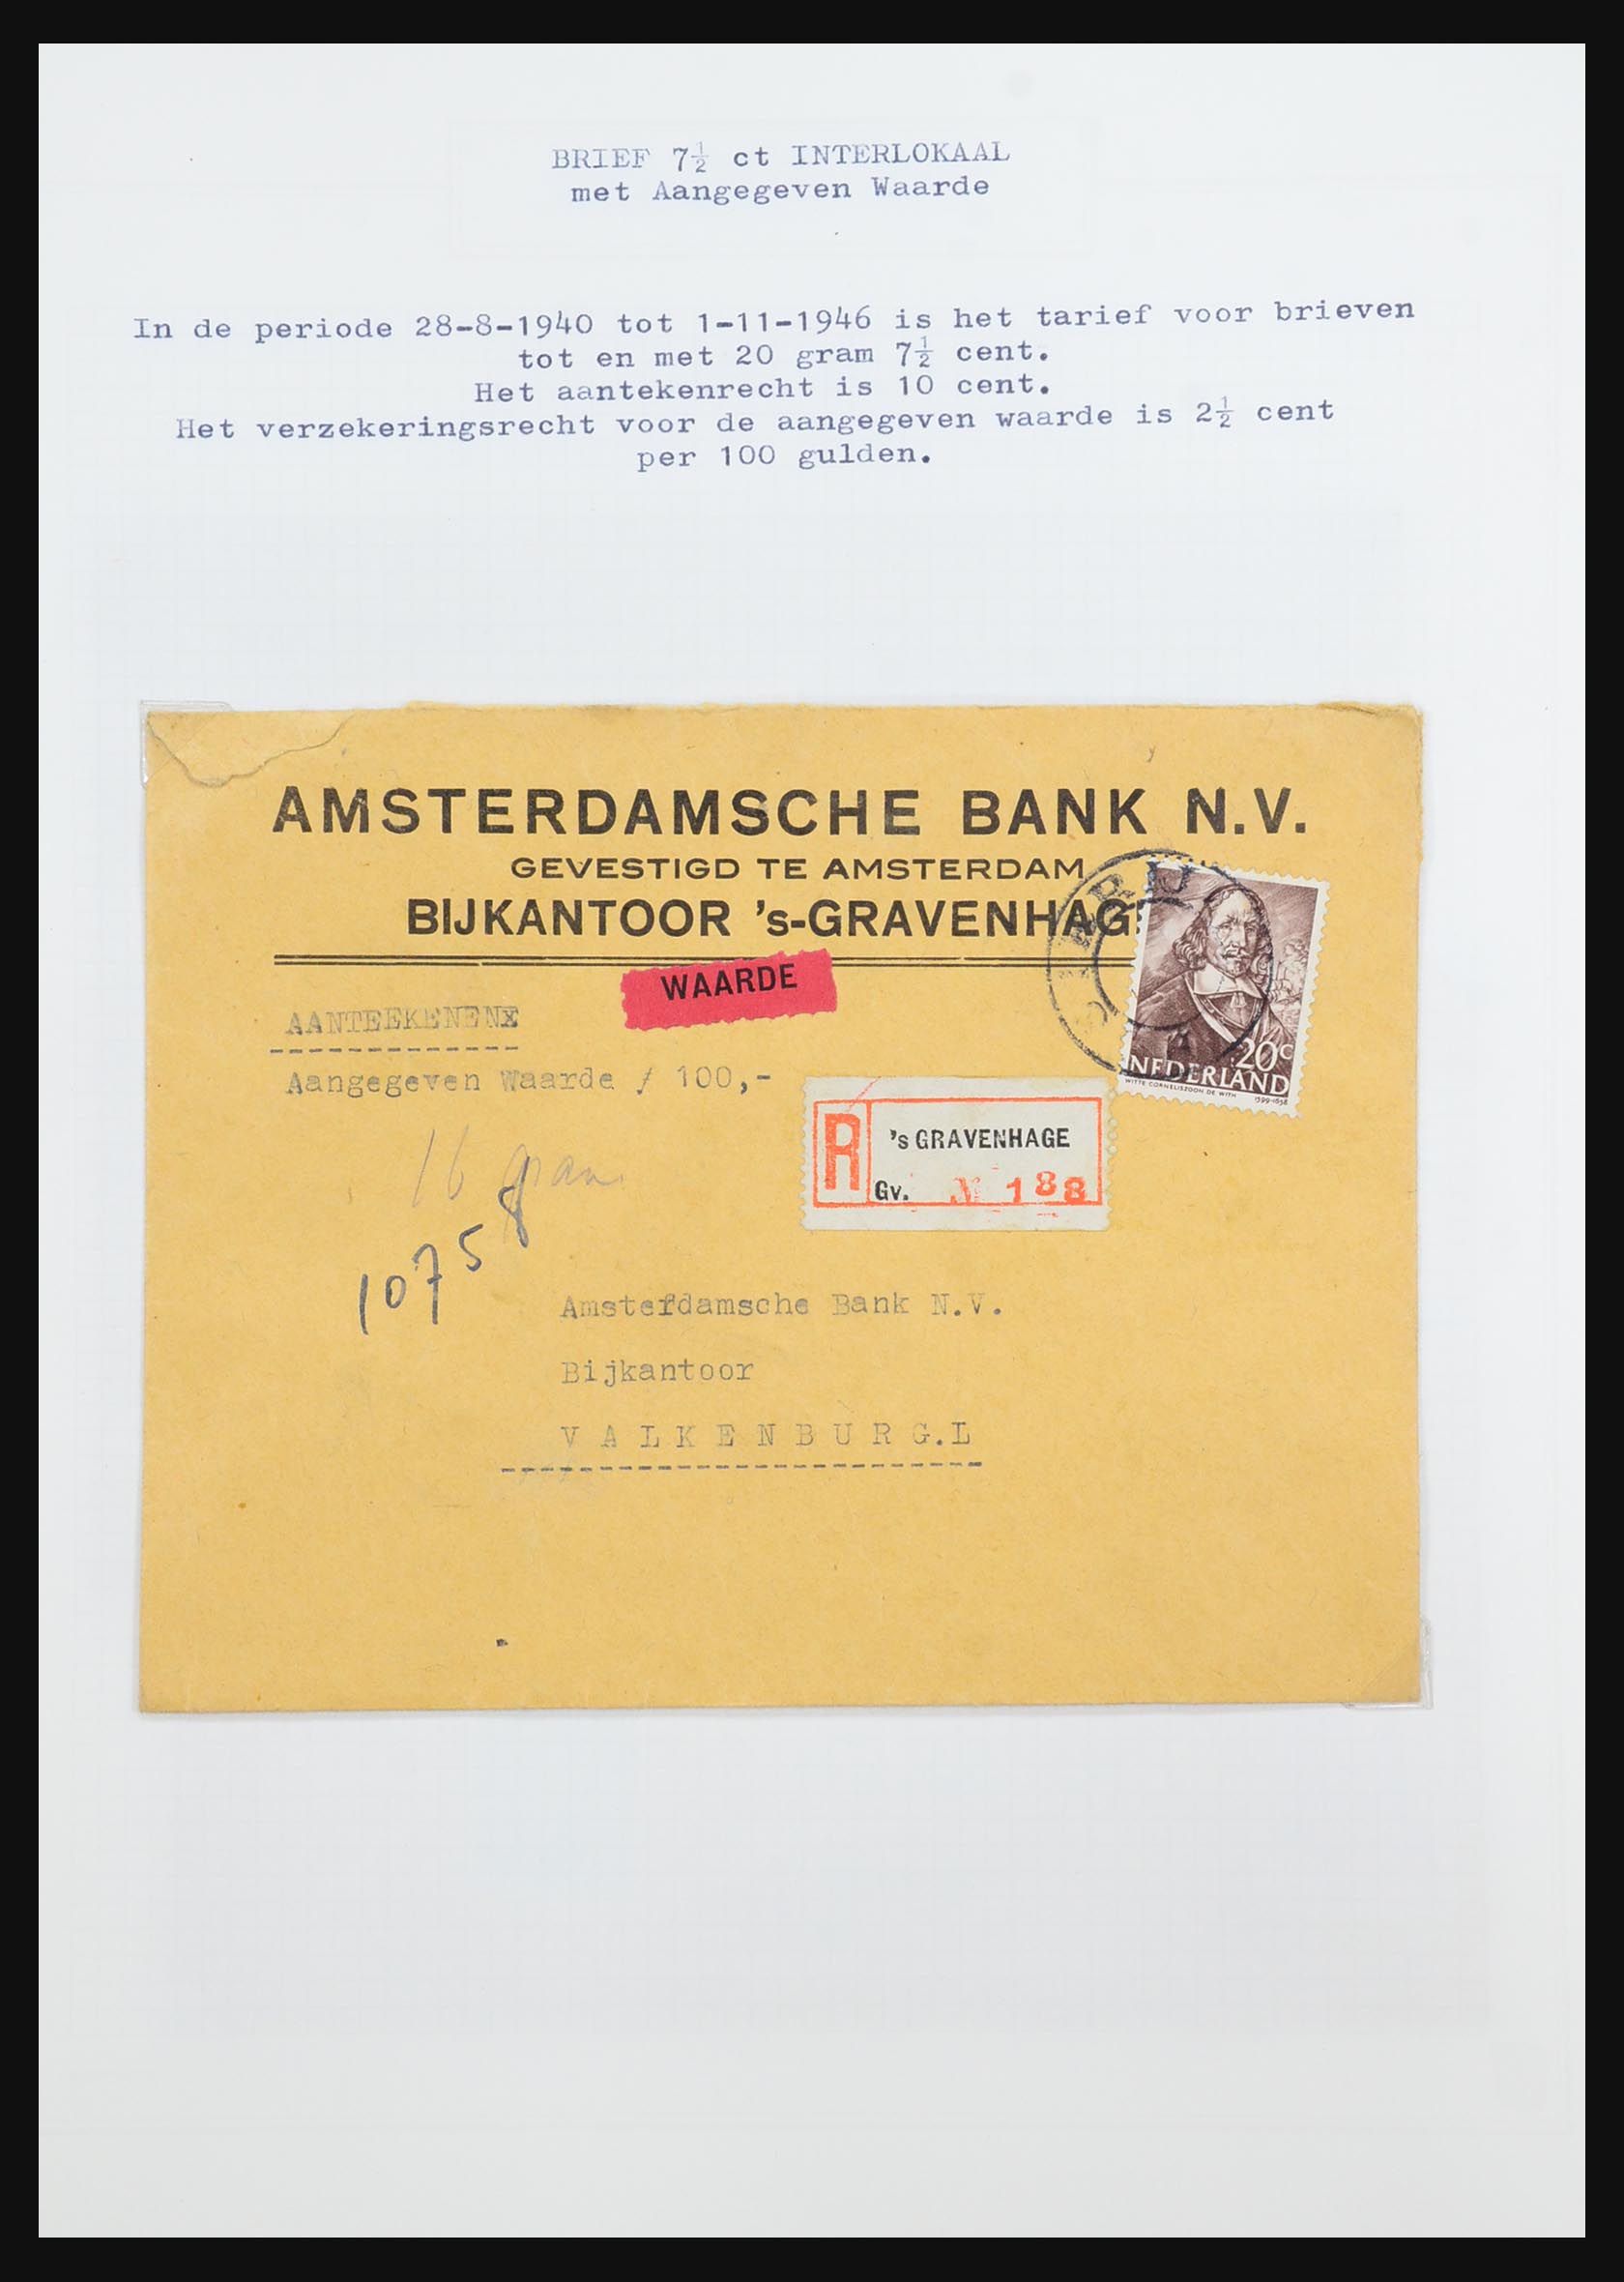 31528 095 - 31528 Nederland brieven 1853-1953.